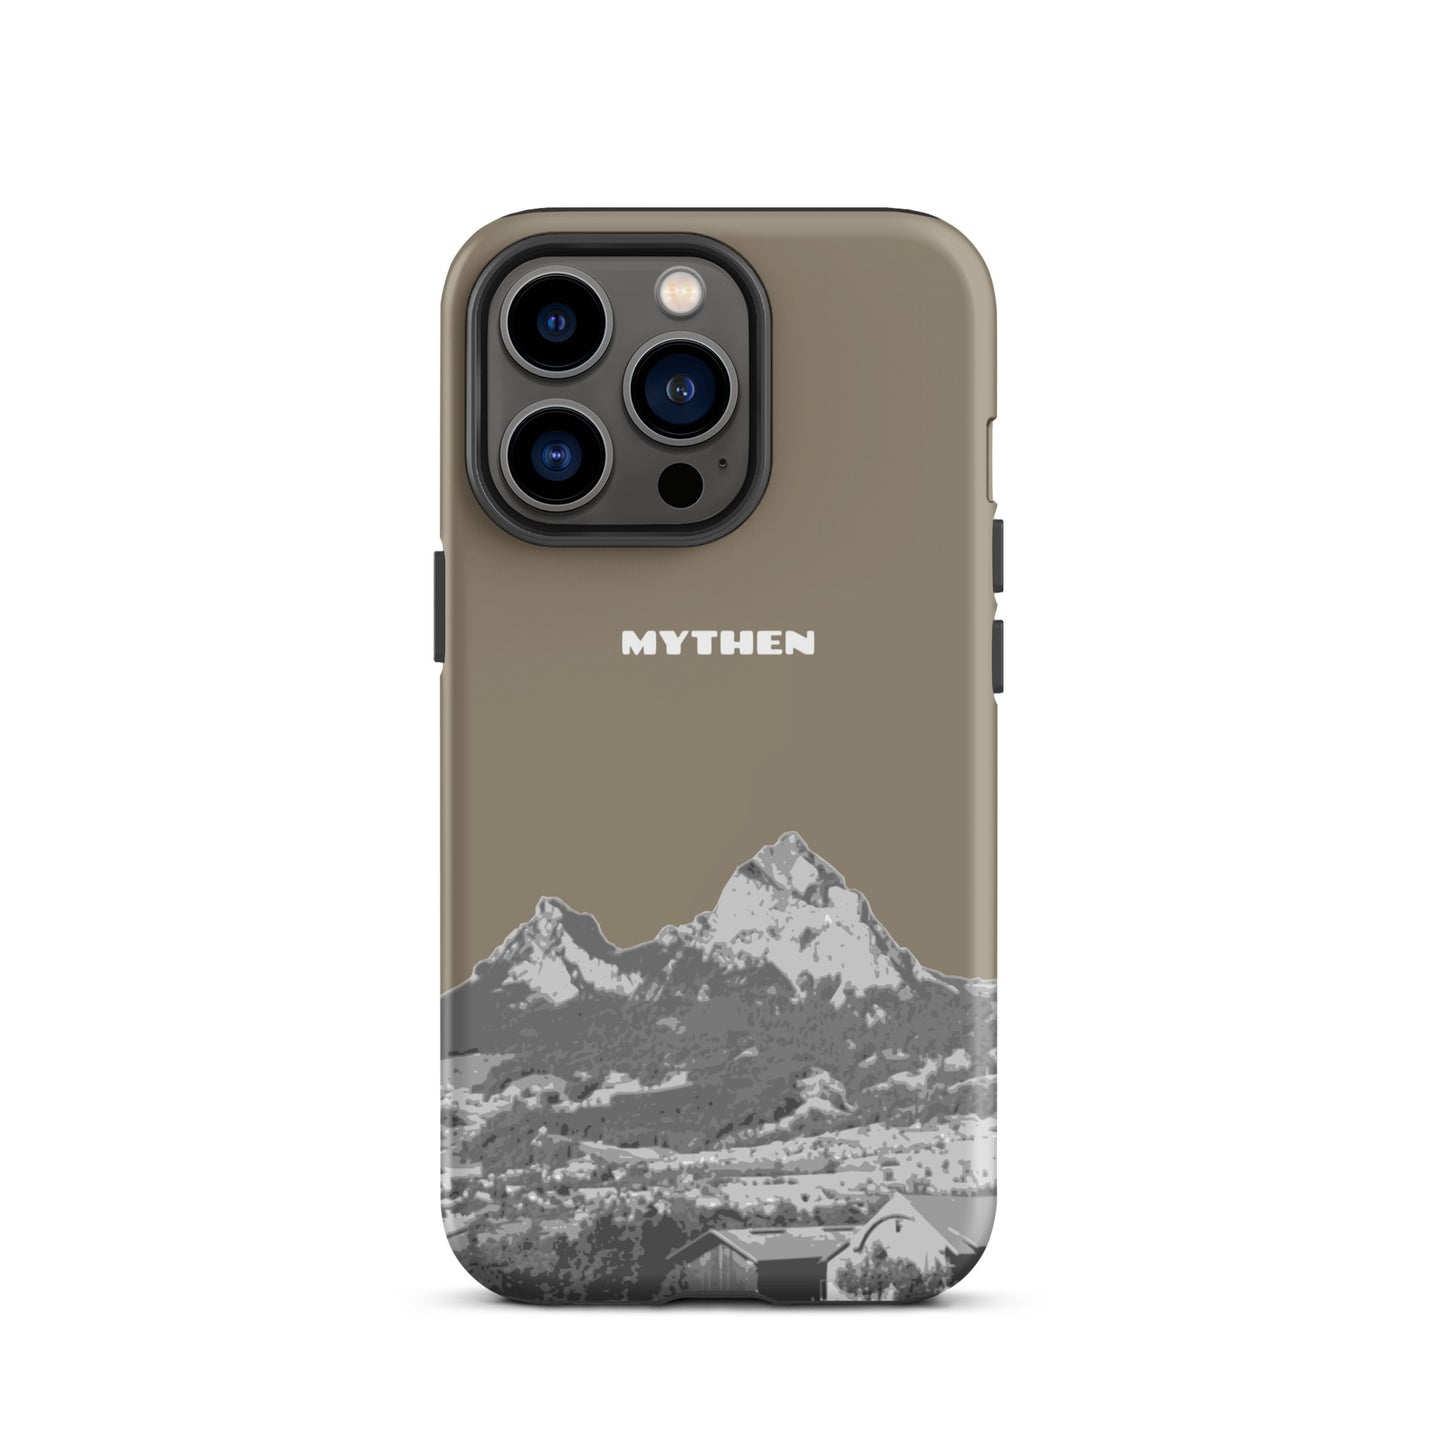 Hülle für das iPhone 13 Pro von Apple in der Farbe Graubraun, dass den Grossen Mythen und den Kleinen Mythen bei Schwyz zeigt. 